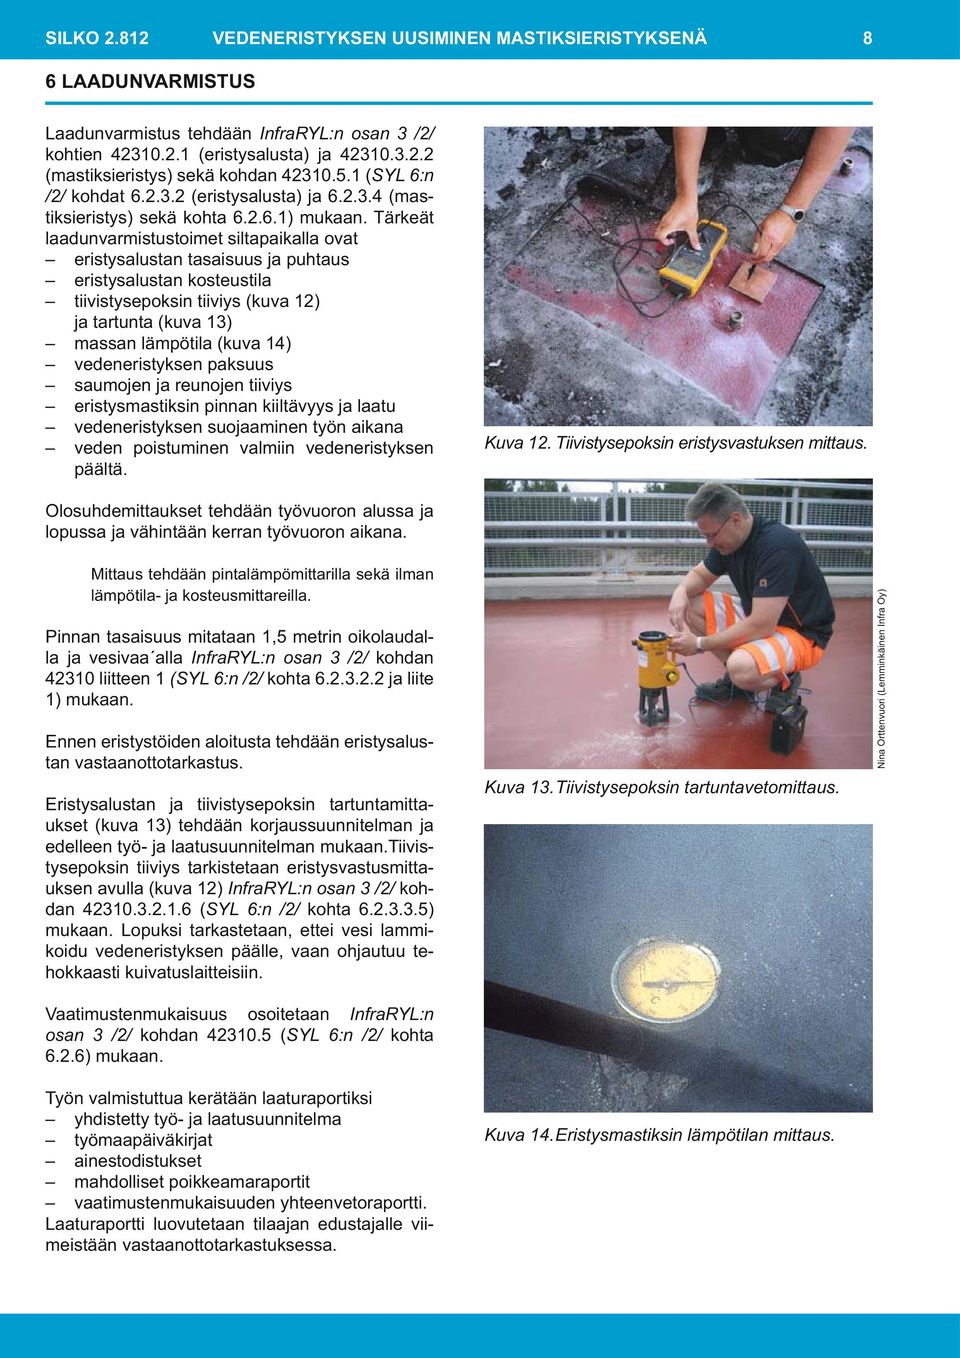 Tärkeät laadunvarmistustoimet siltapaikalla ovat eristysalustan tasaisuus ja puhtaus eristysalustan kosteustila tiivistysepoksin tiiviys (kuva 12) ja tartunta (kuva 13) massan lämpötila (kuva 14)